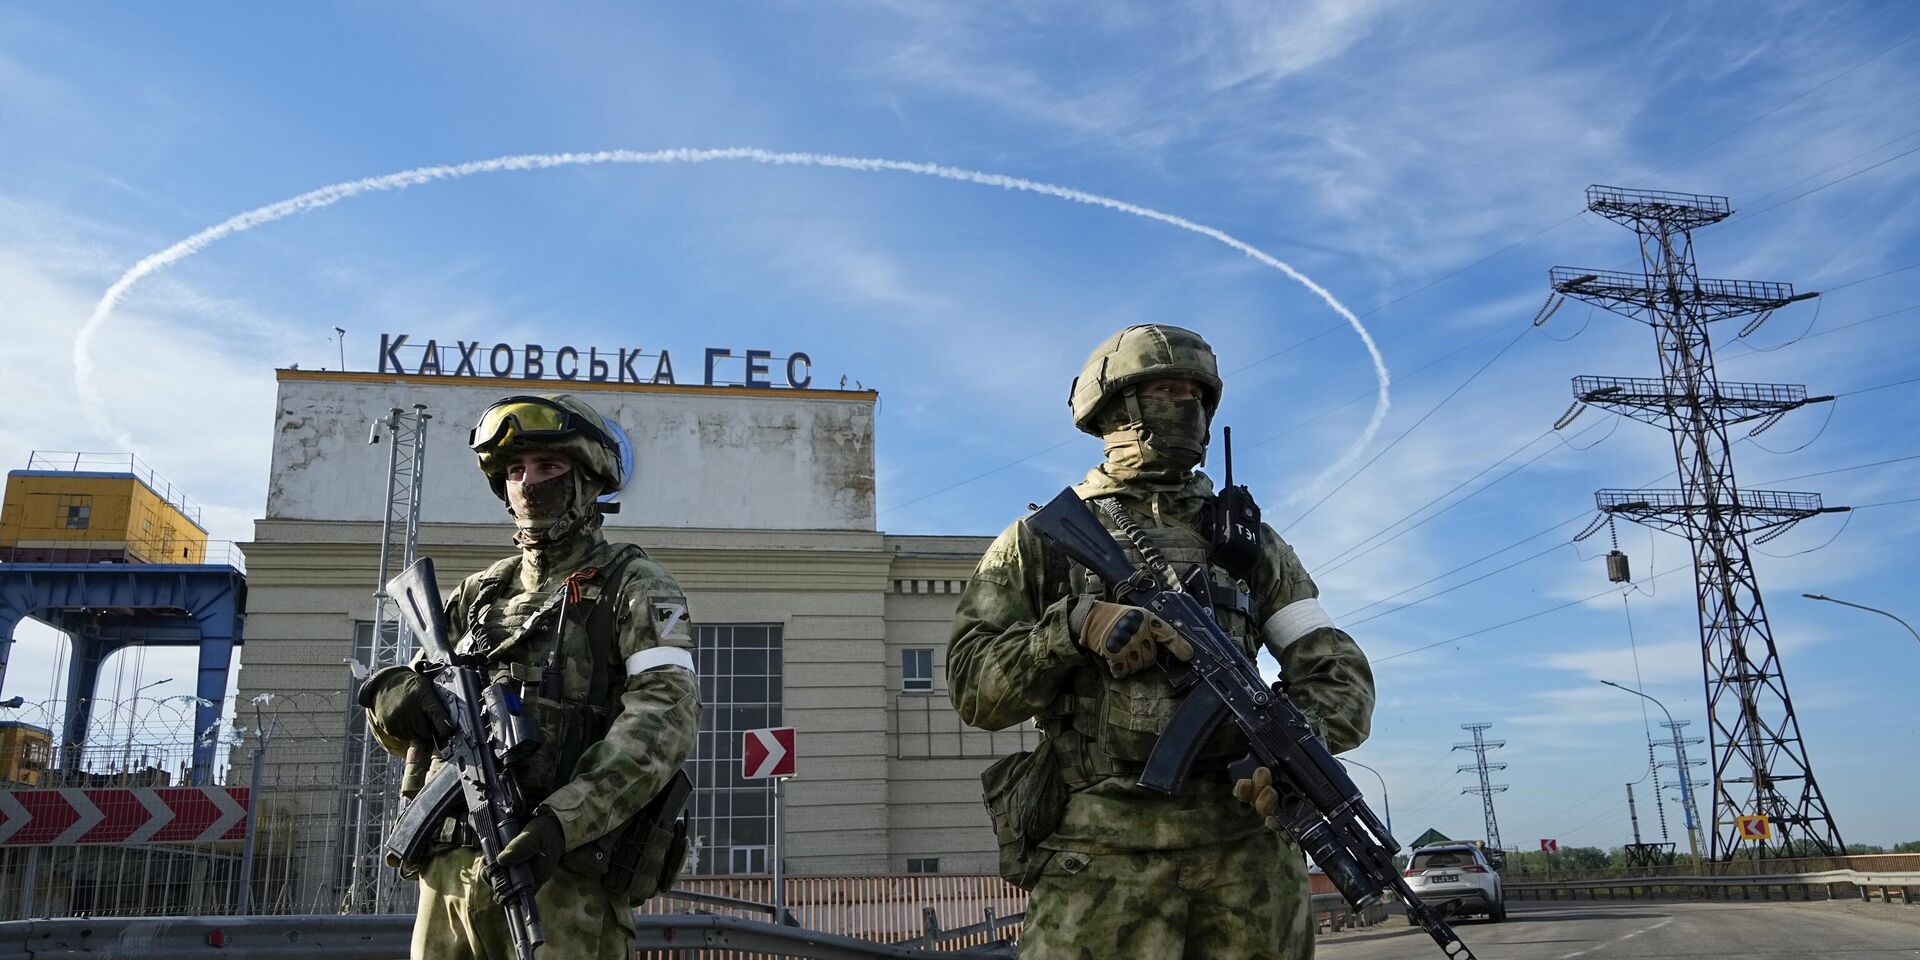 Российские войска охраняют территорию Каховской ГЭС, расположенной в Херсонской области. Пятница, 20 мая, 2022 год - ИноСМИ, 1920, 15.07.2023